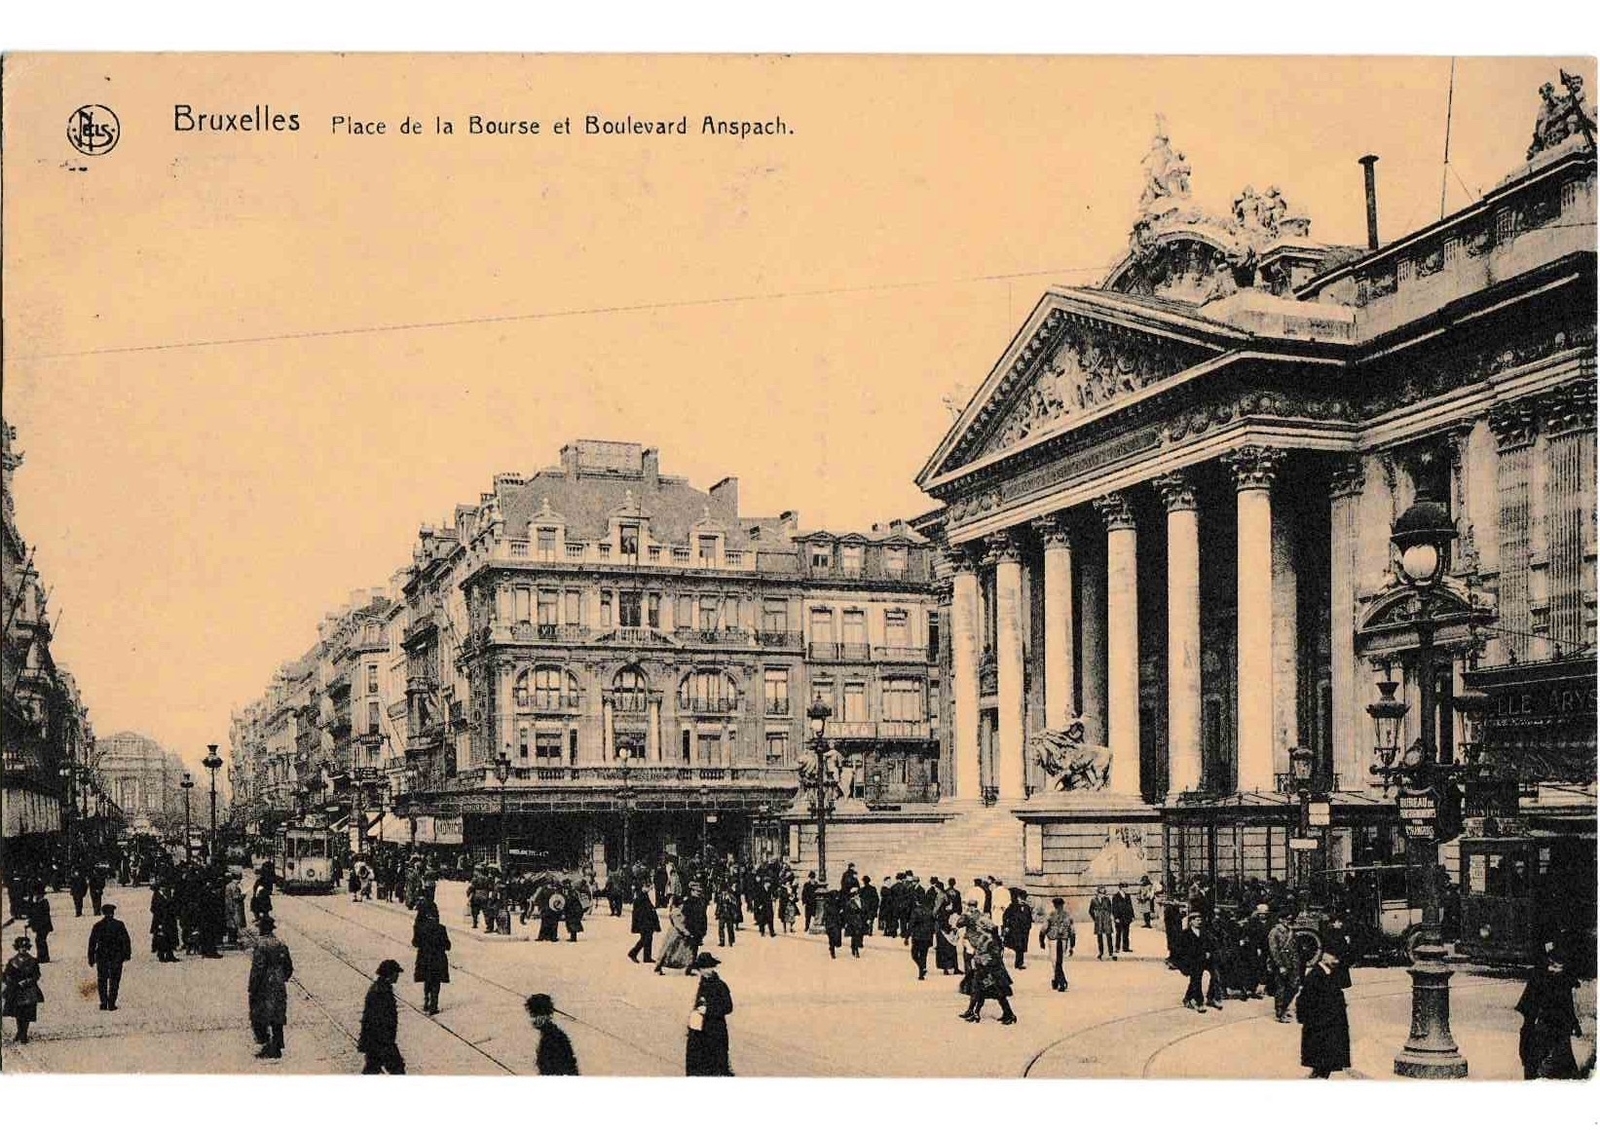 Bruxelles 1922 c geneanet org